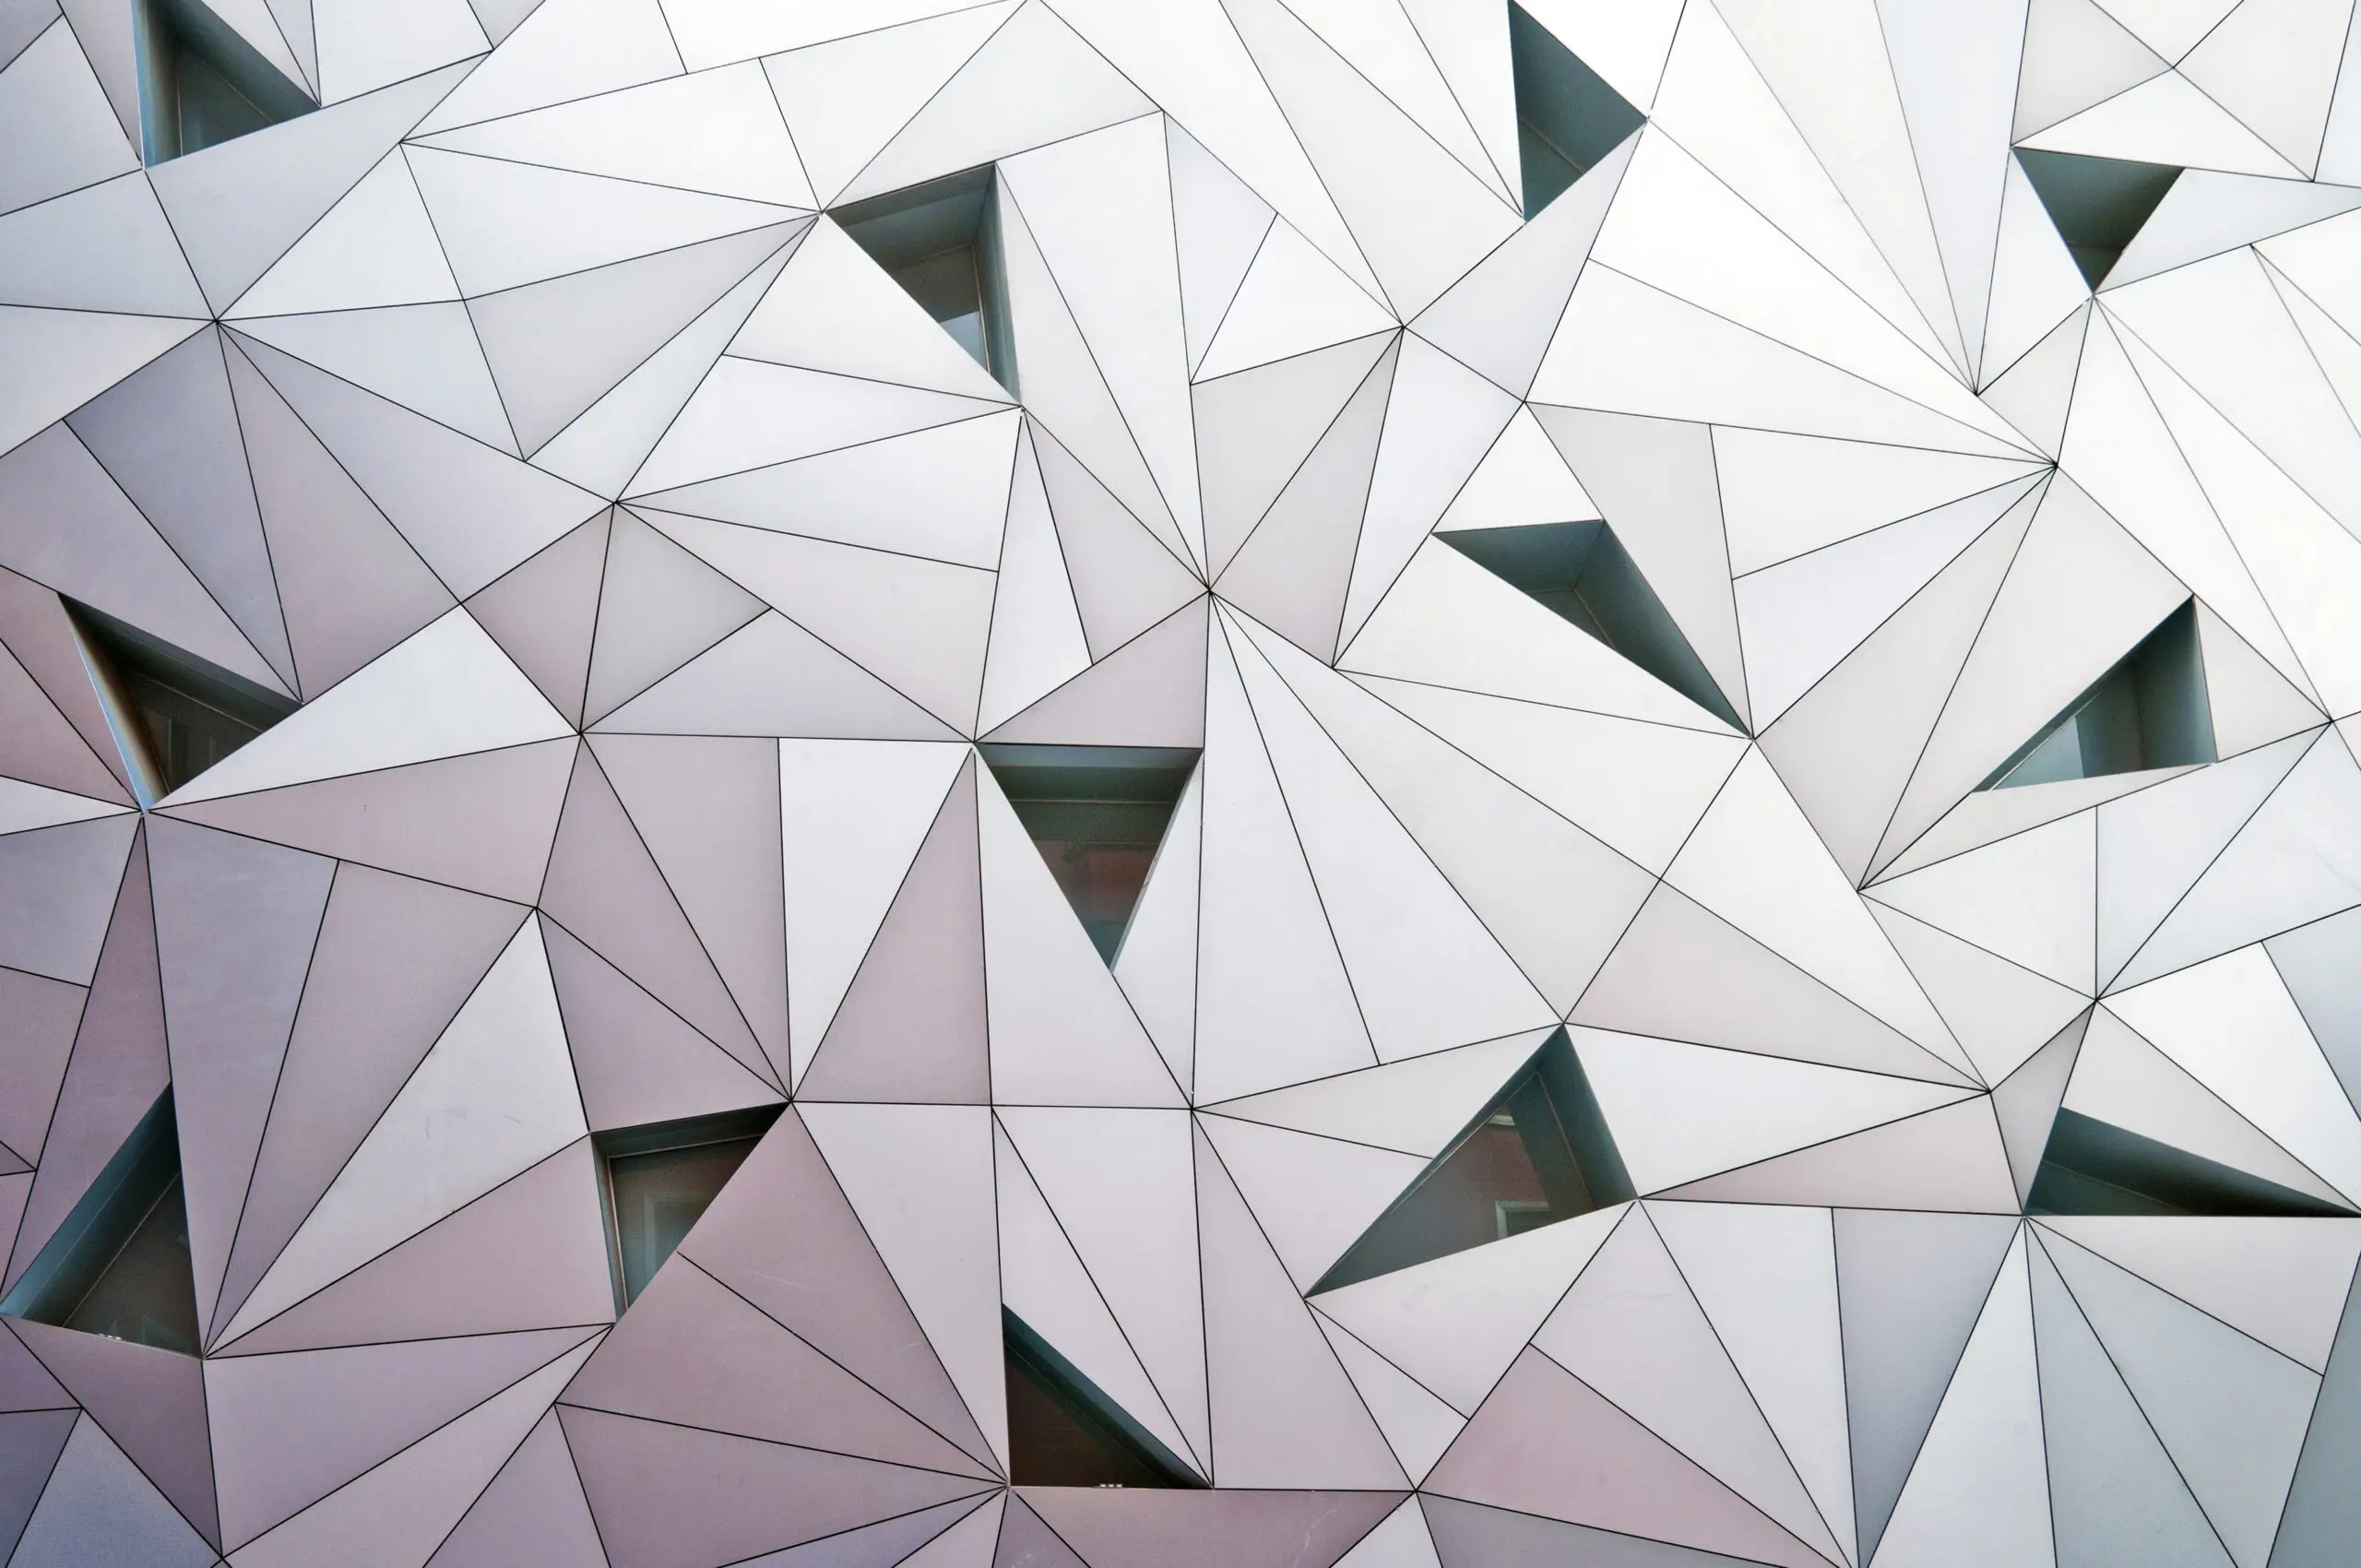 Wandbild (2721) triangulation 1 präsentiert: Architektur,Detailaufnahmen